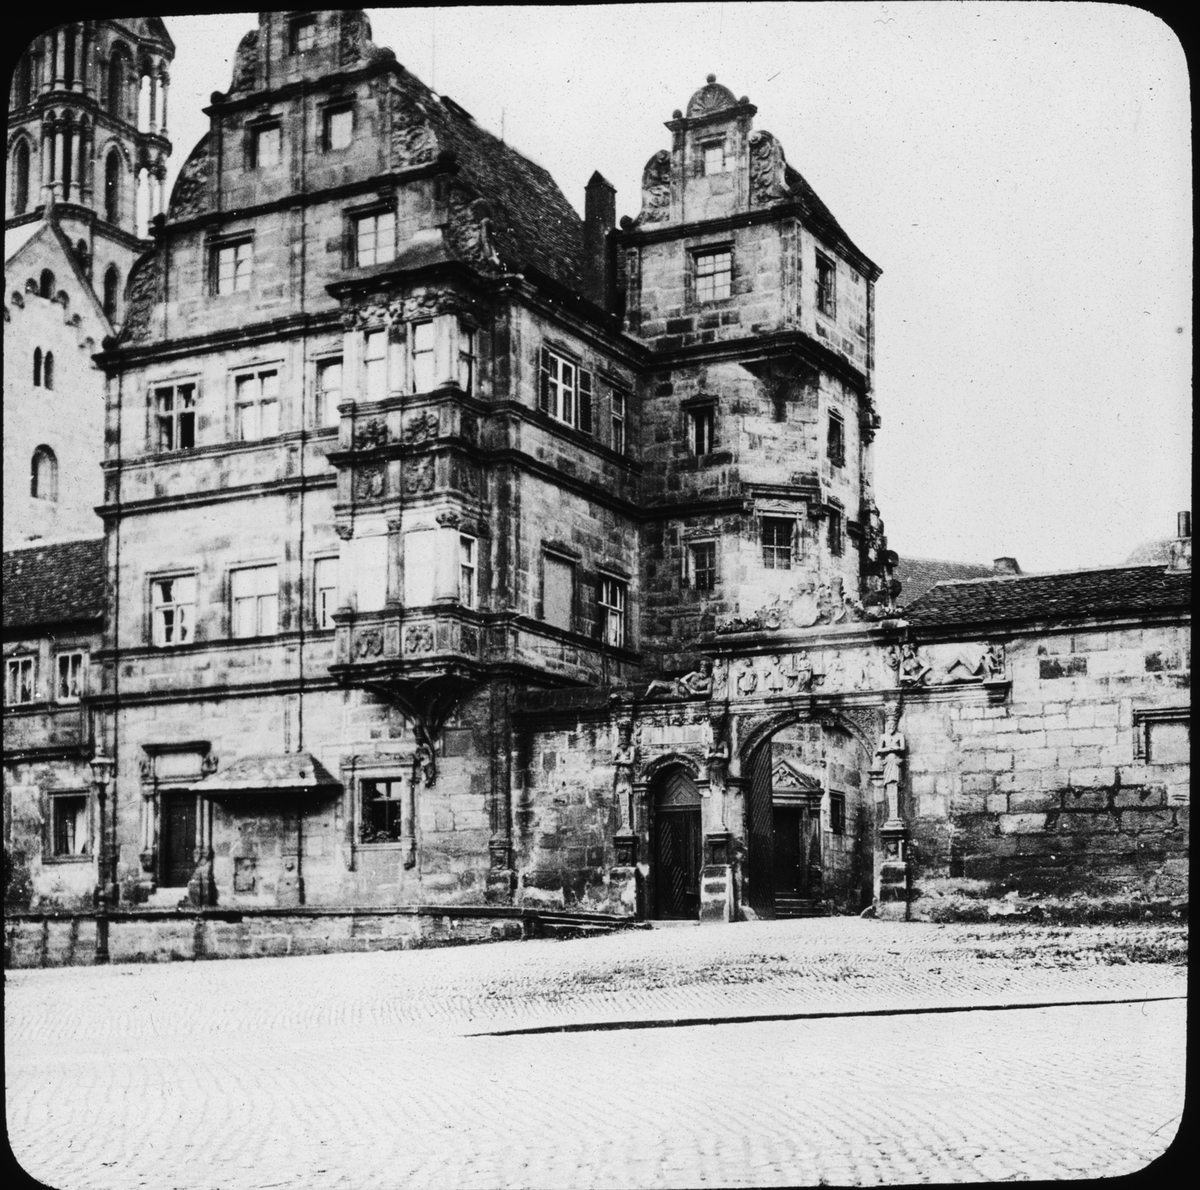 Skioptikonbild med motiv av Alte Hofhaltung, gamla domstolen i Bamberg, främre fasad på Cathedral Square.
Bilden har förvarats i kartong märkt: Resan 1906. Bamberg 8.